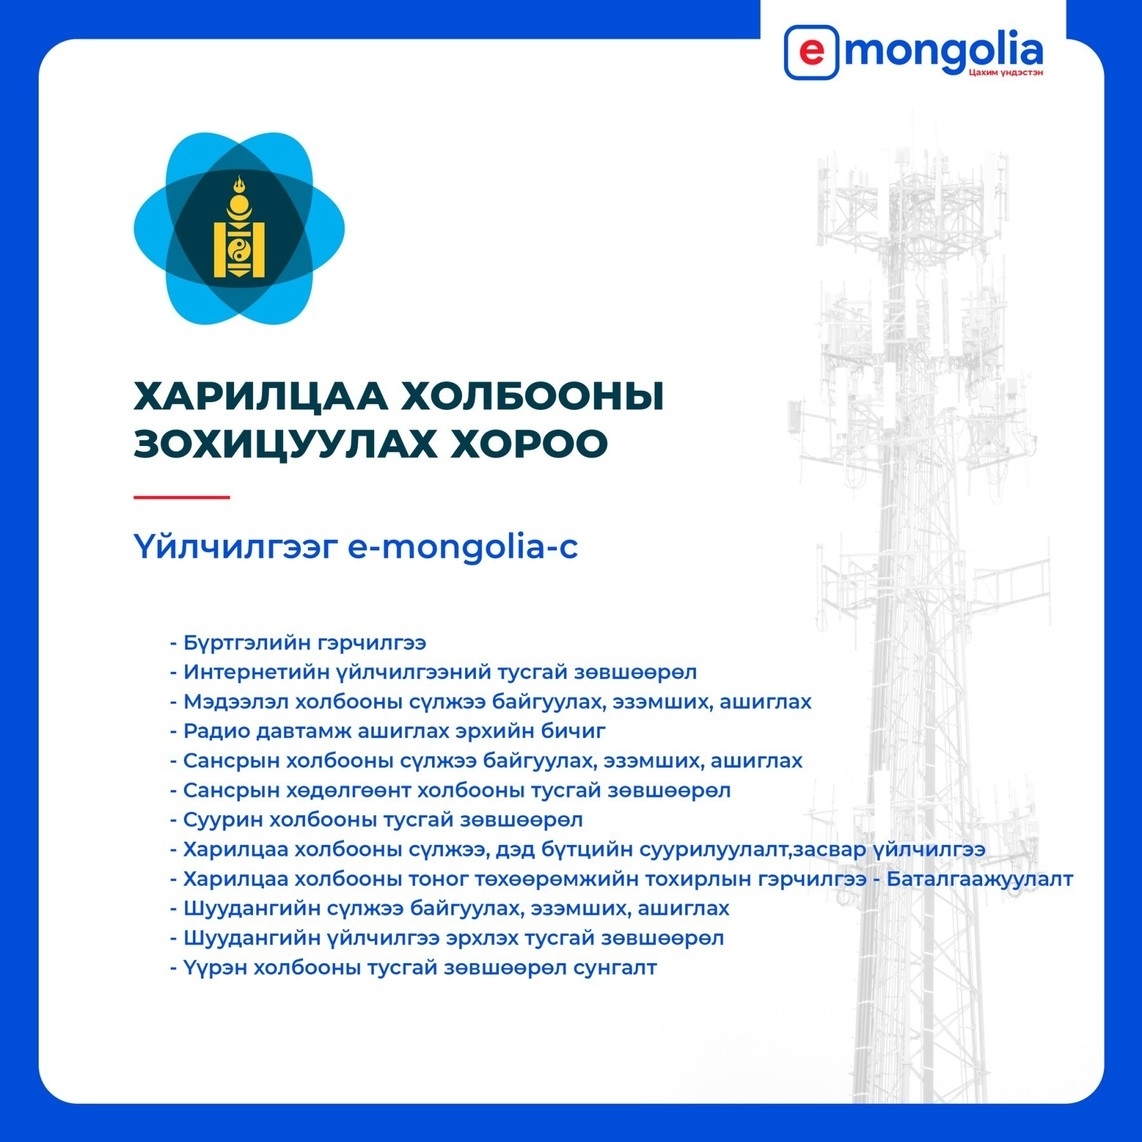 Харилцаа холбооны тусгай зөвшөөрлийн 22 үйлчилгээг E-MONGOLIA төрийн цахим үйлчилгээний нэгдсэн системээс авах боломжтой боллоо